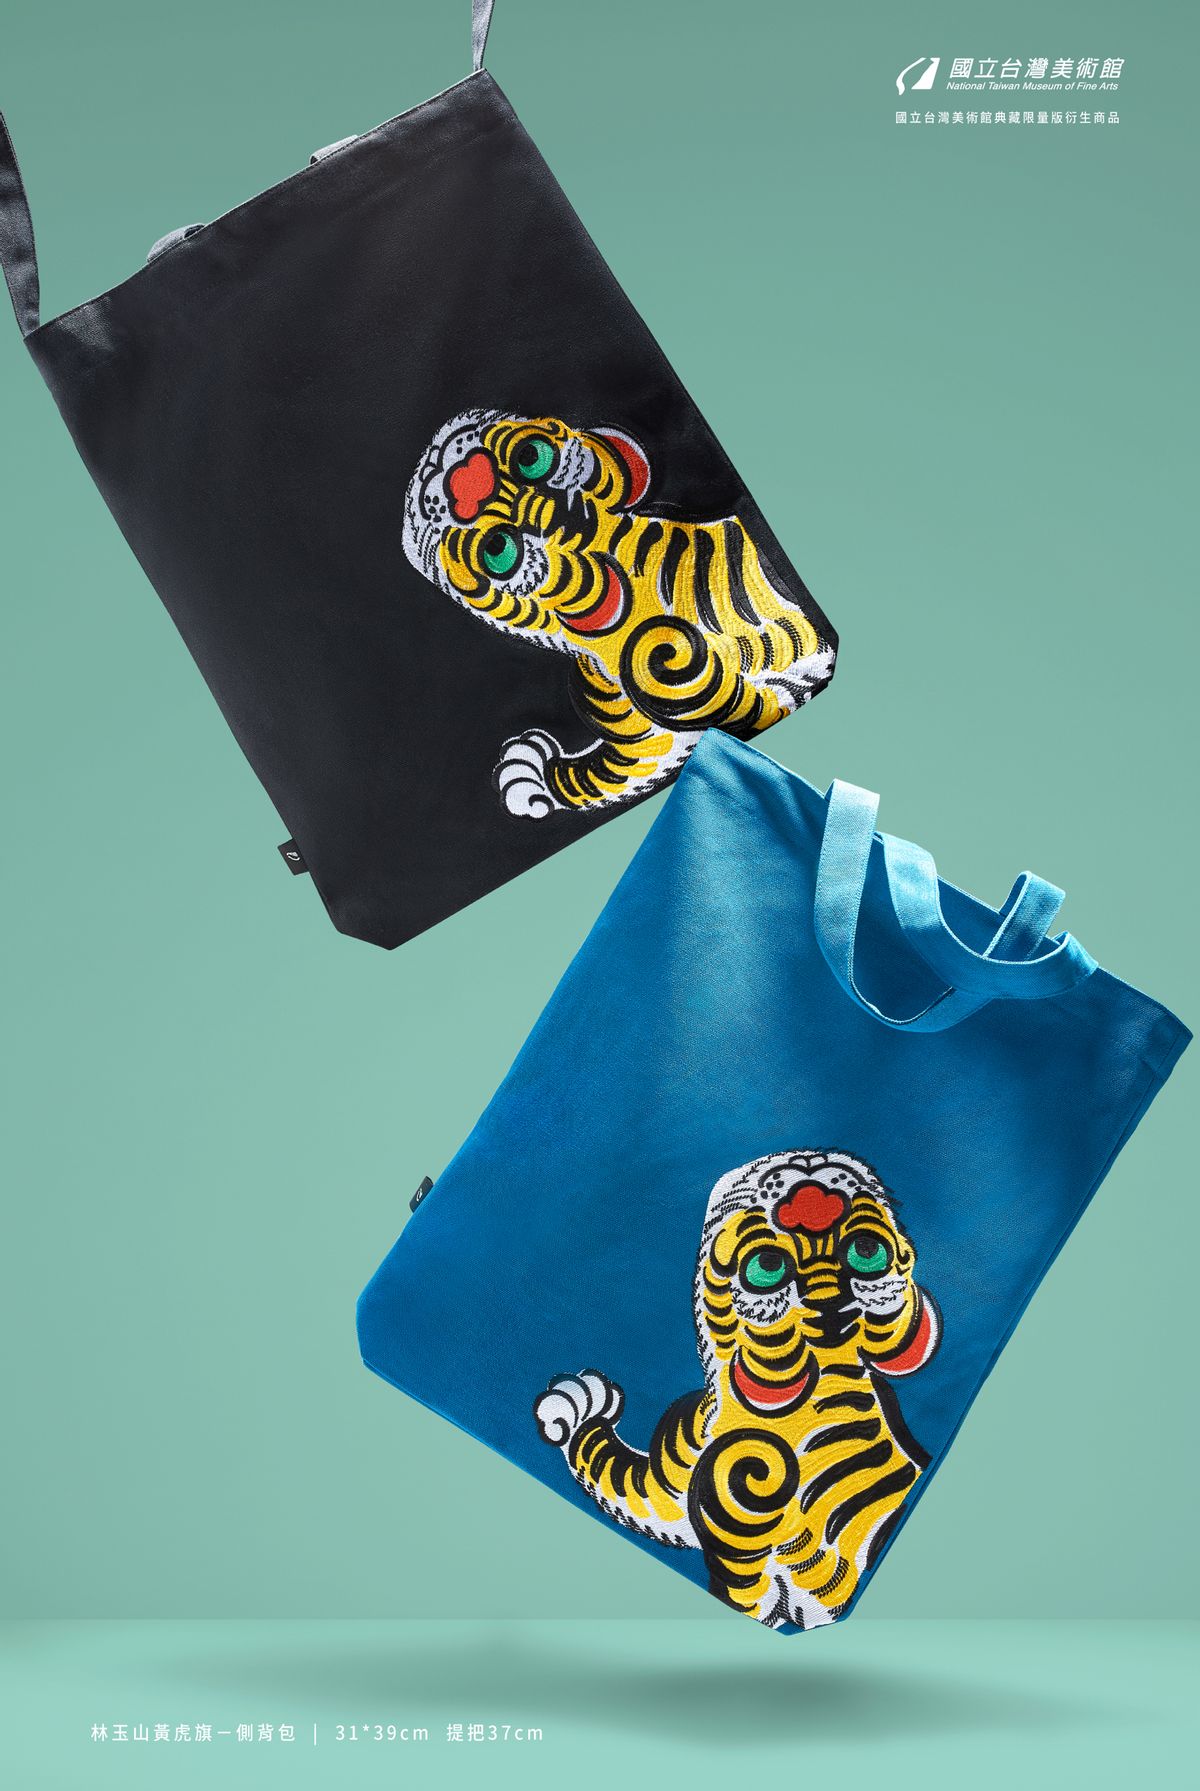 商品:林玉山黃虎旗-側背包的(1)張圖片